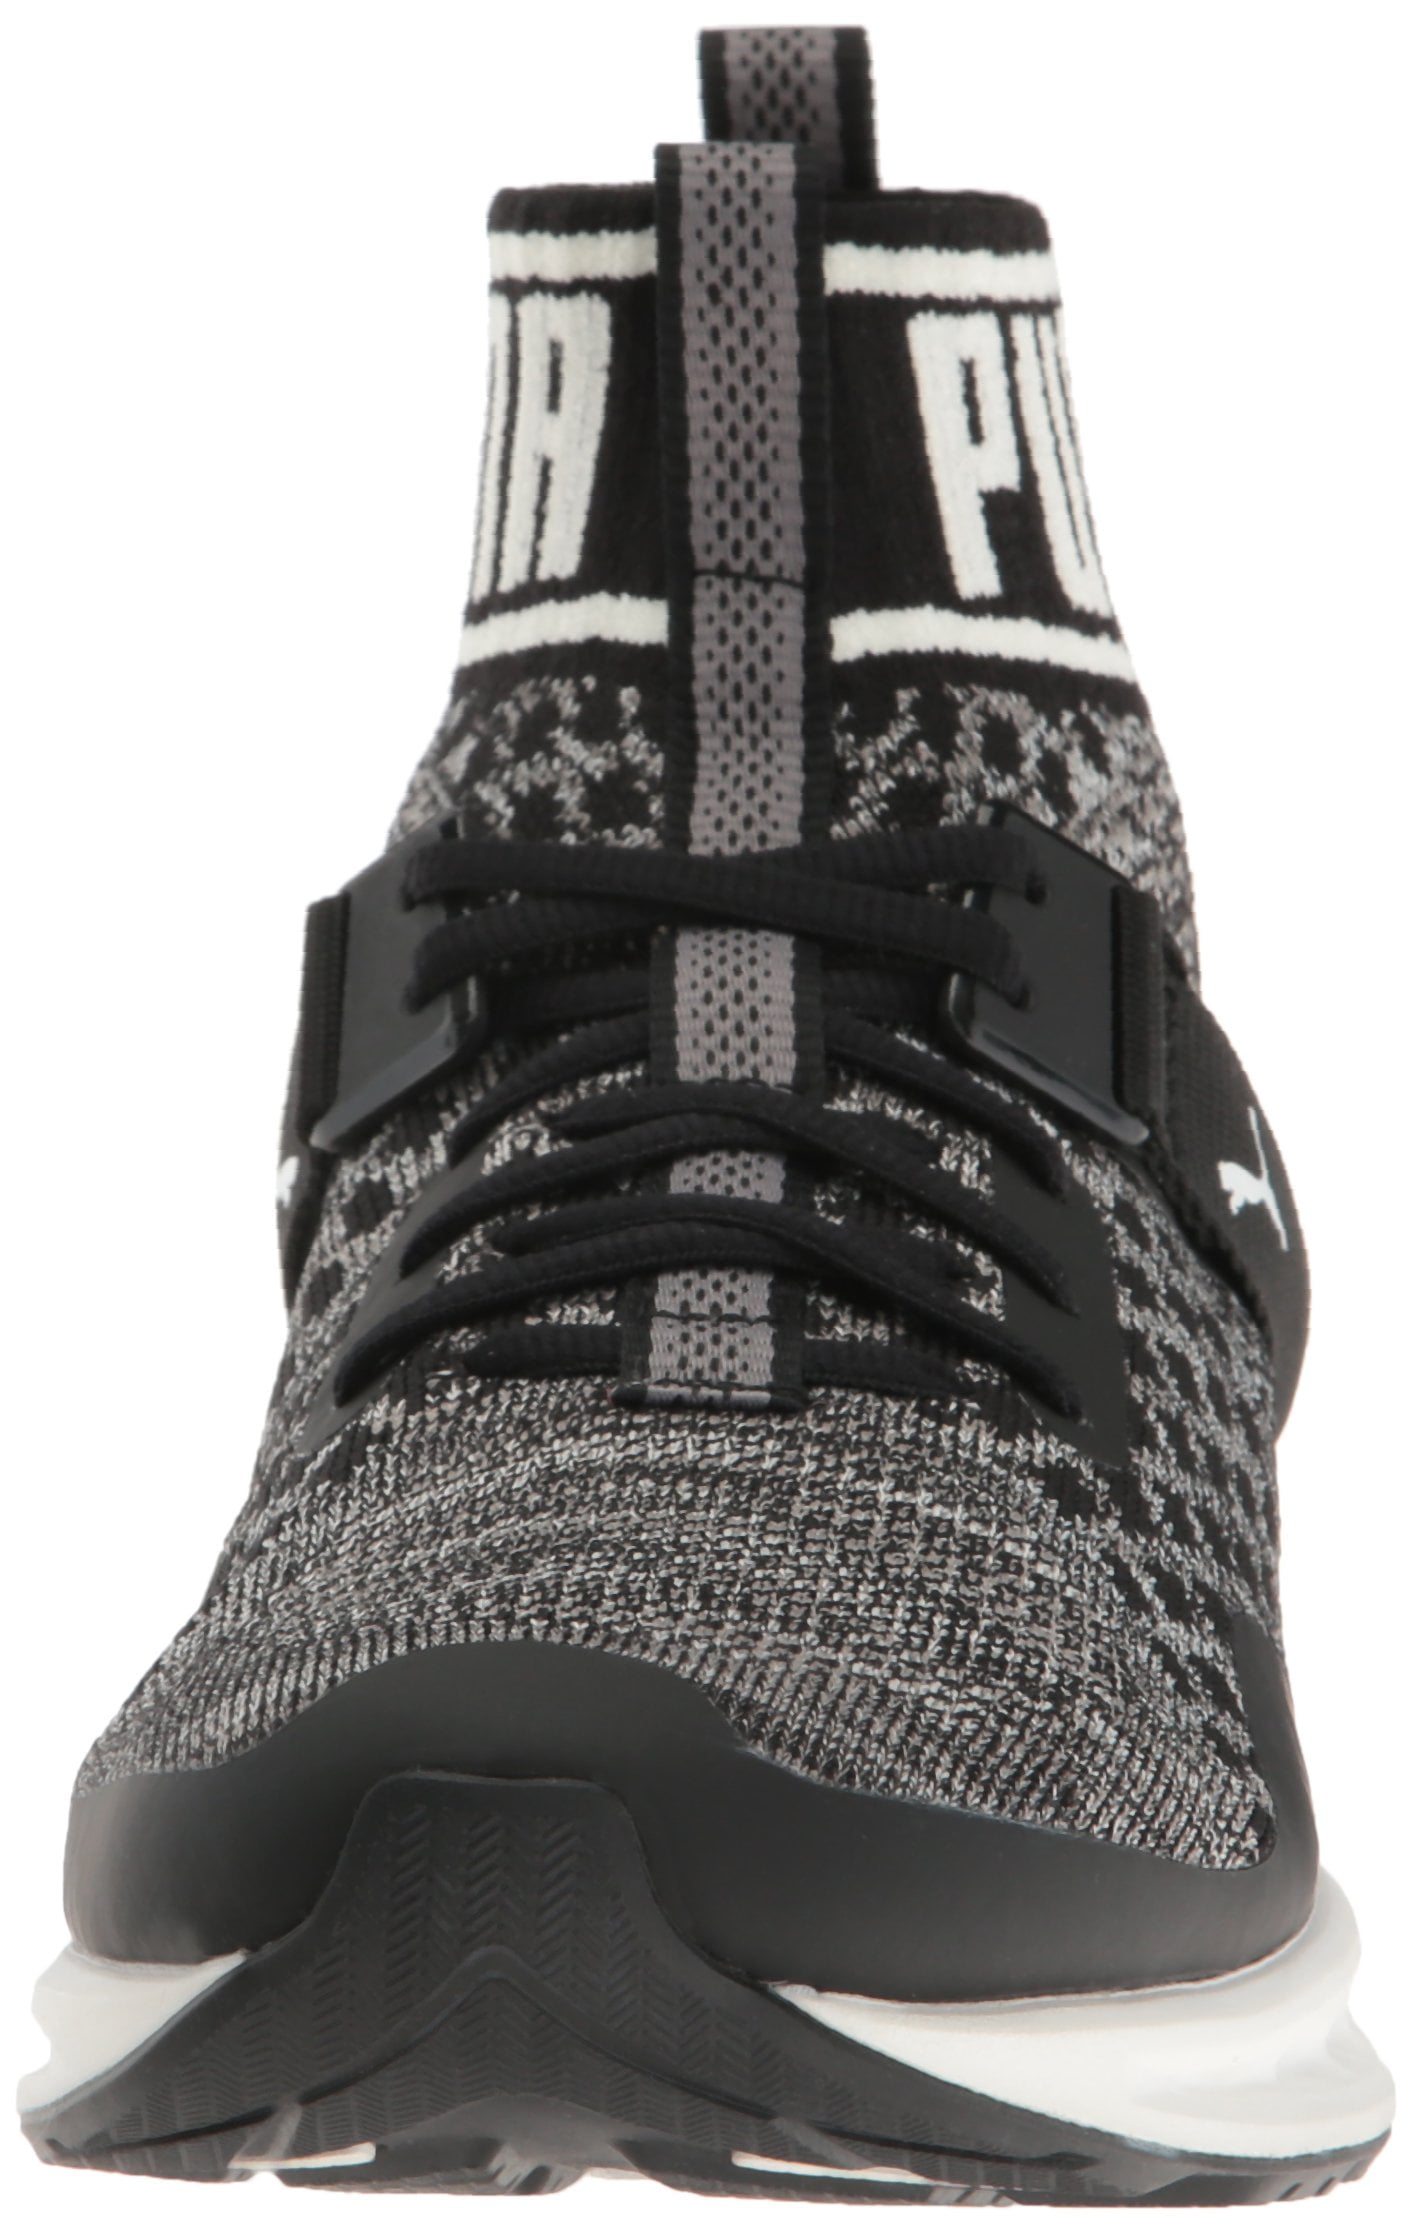 Puma Sneakers Black - Walmart.com